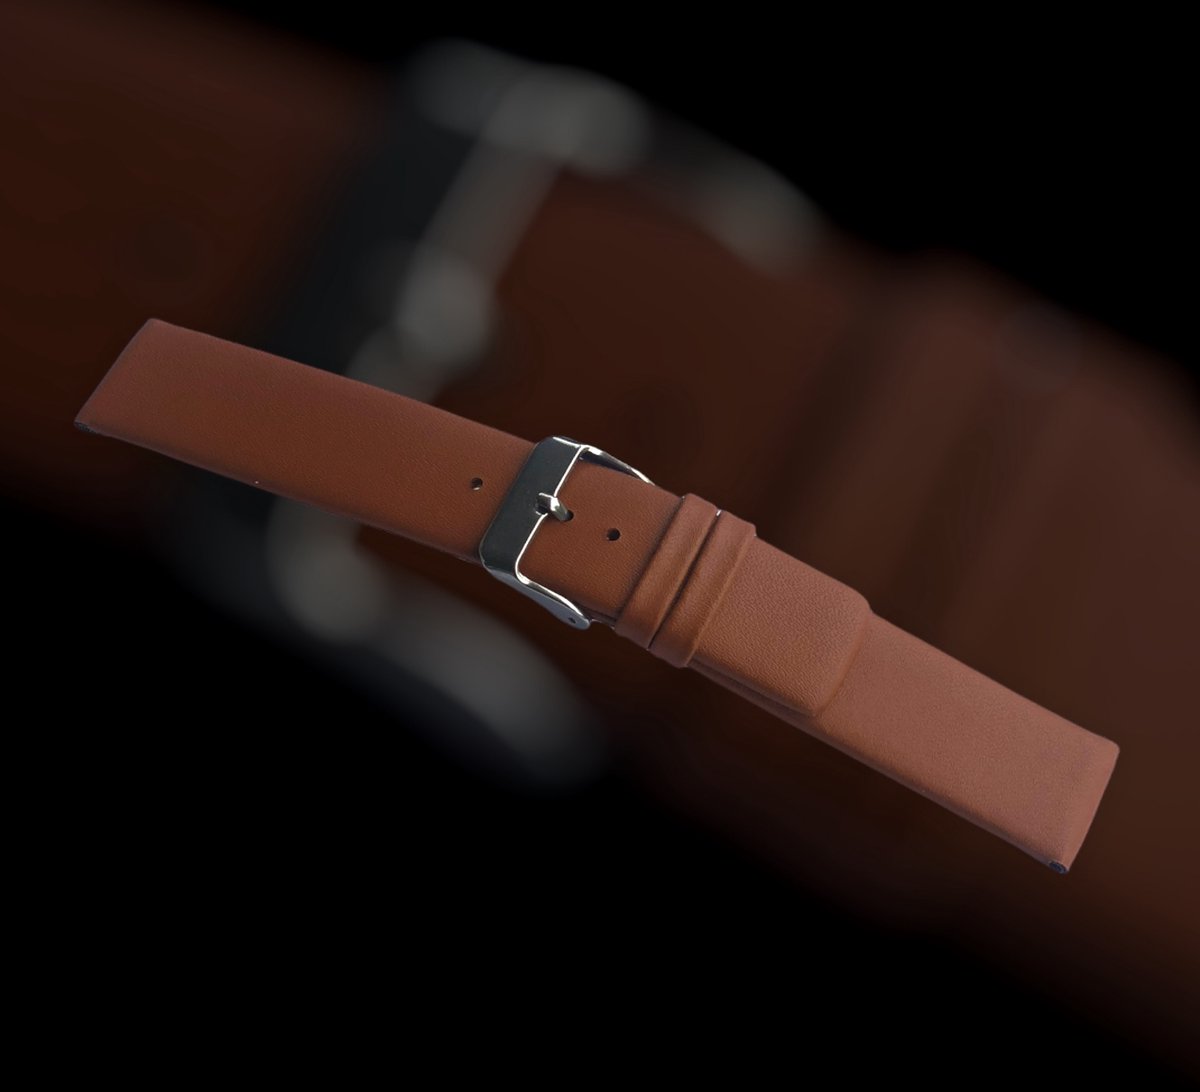 horlogeband-horlogebandje-22mm-echt leer-bruin-recht-zacht-plat-leer-22 mm